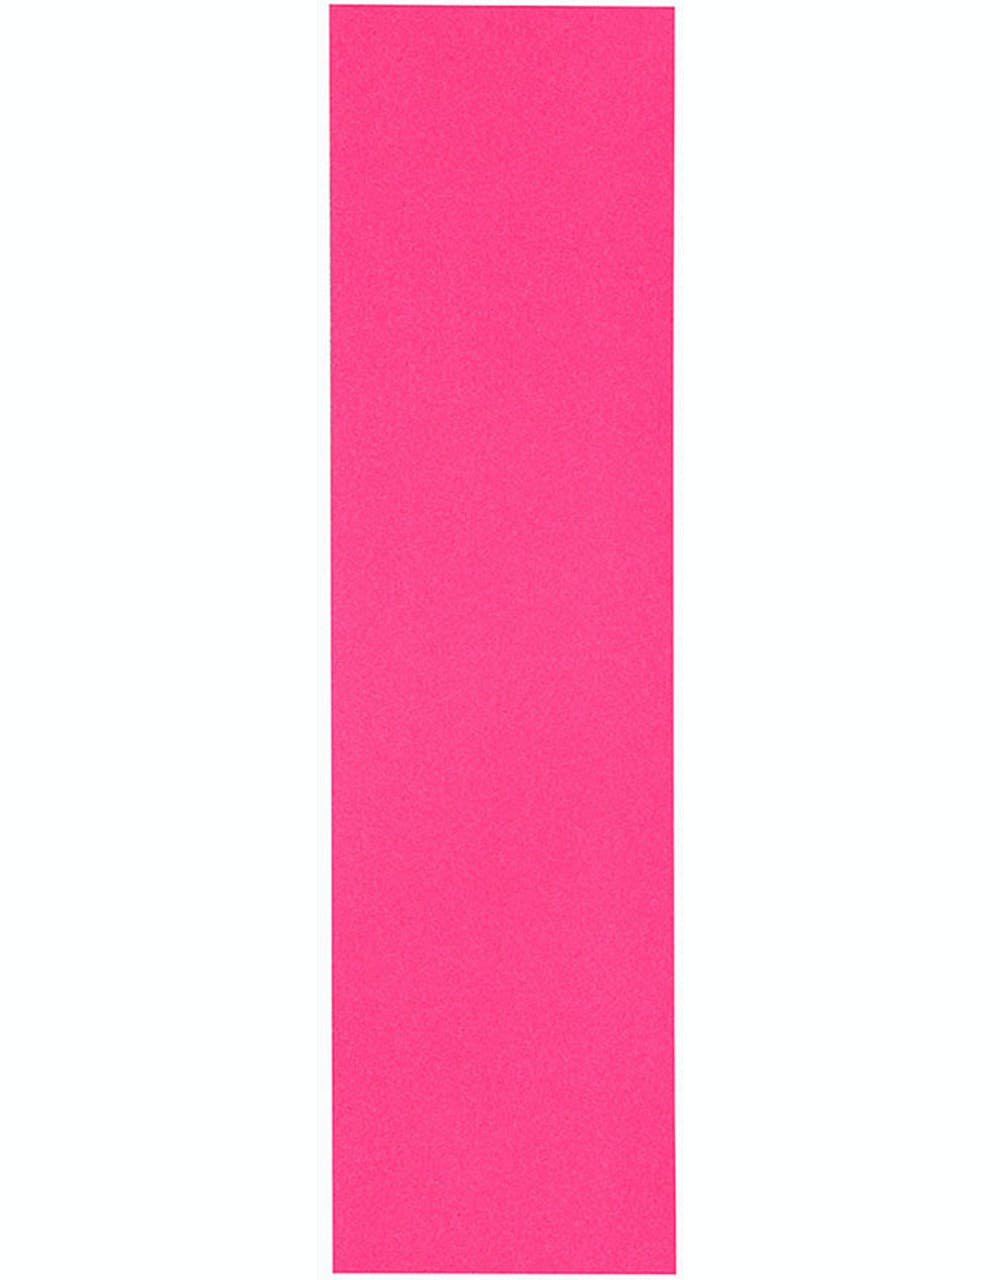 Jessup 9" Grip Tape Sheet - Neon Pink